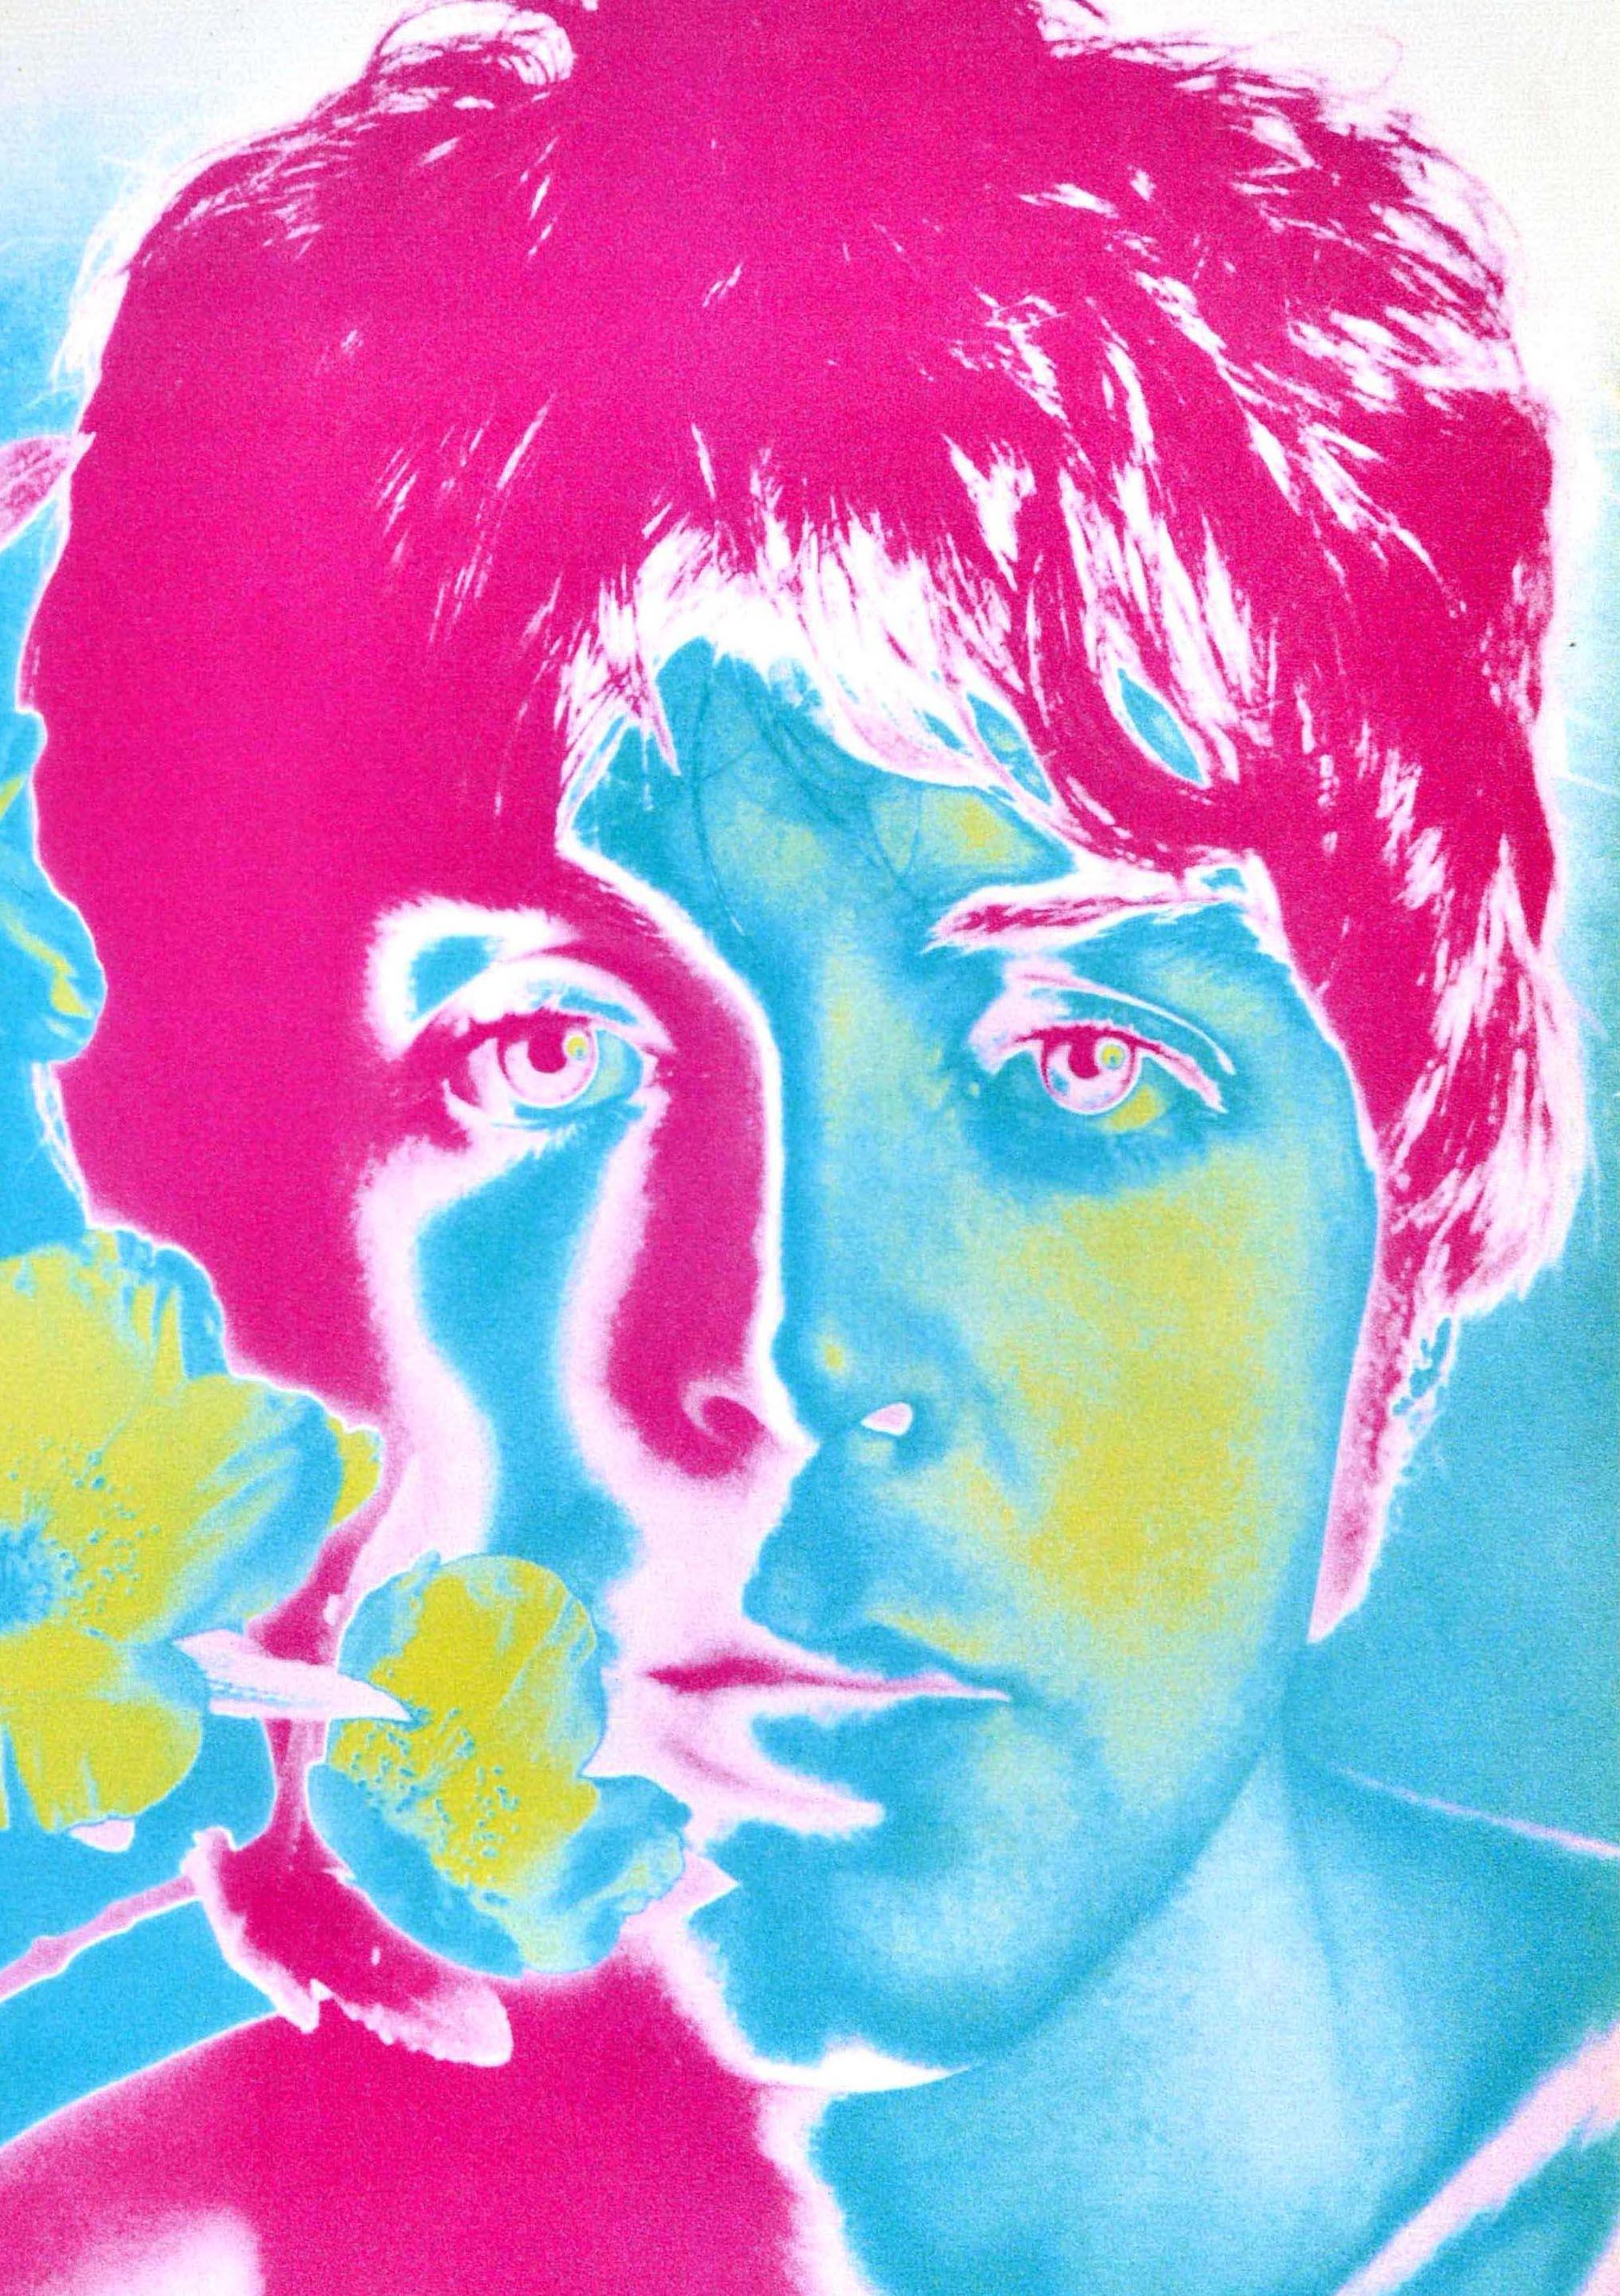 Original Vintage-Werbeplakat mit einem farbenfrohen und psychedelischen Fotodesign des amerikanischen Fotografen Richard Avedon (1923-2004), das den Beatles-Gitarristen und Singer-Songwriter Paul McCartney (James Paul McCartney; geb. 1942) zeigt,